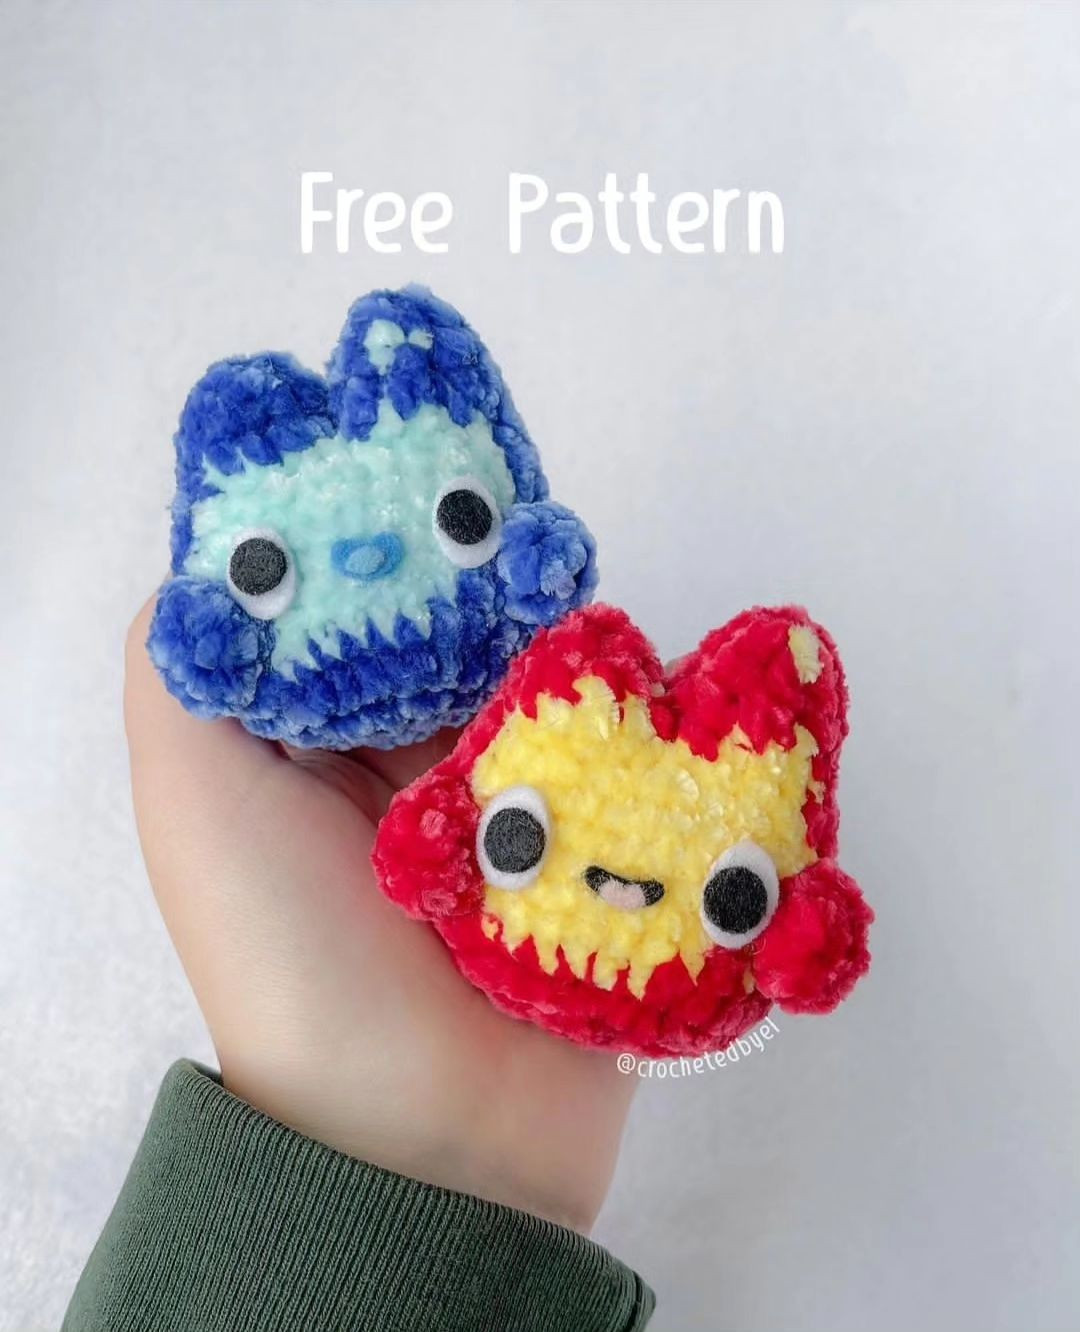 crochet flame stitch pattern